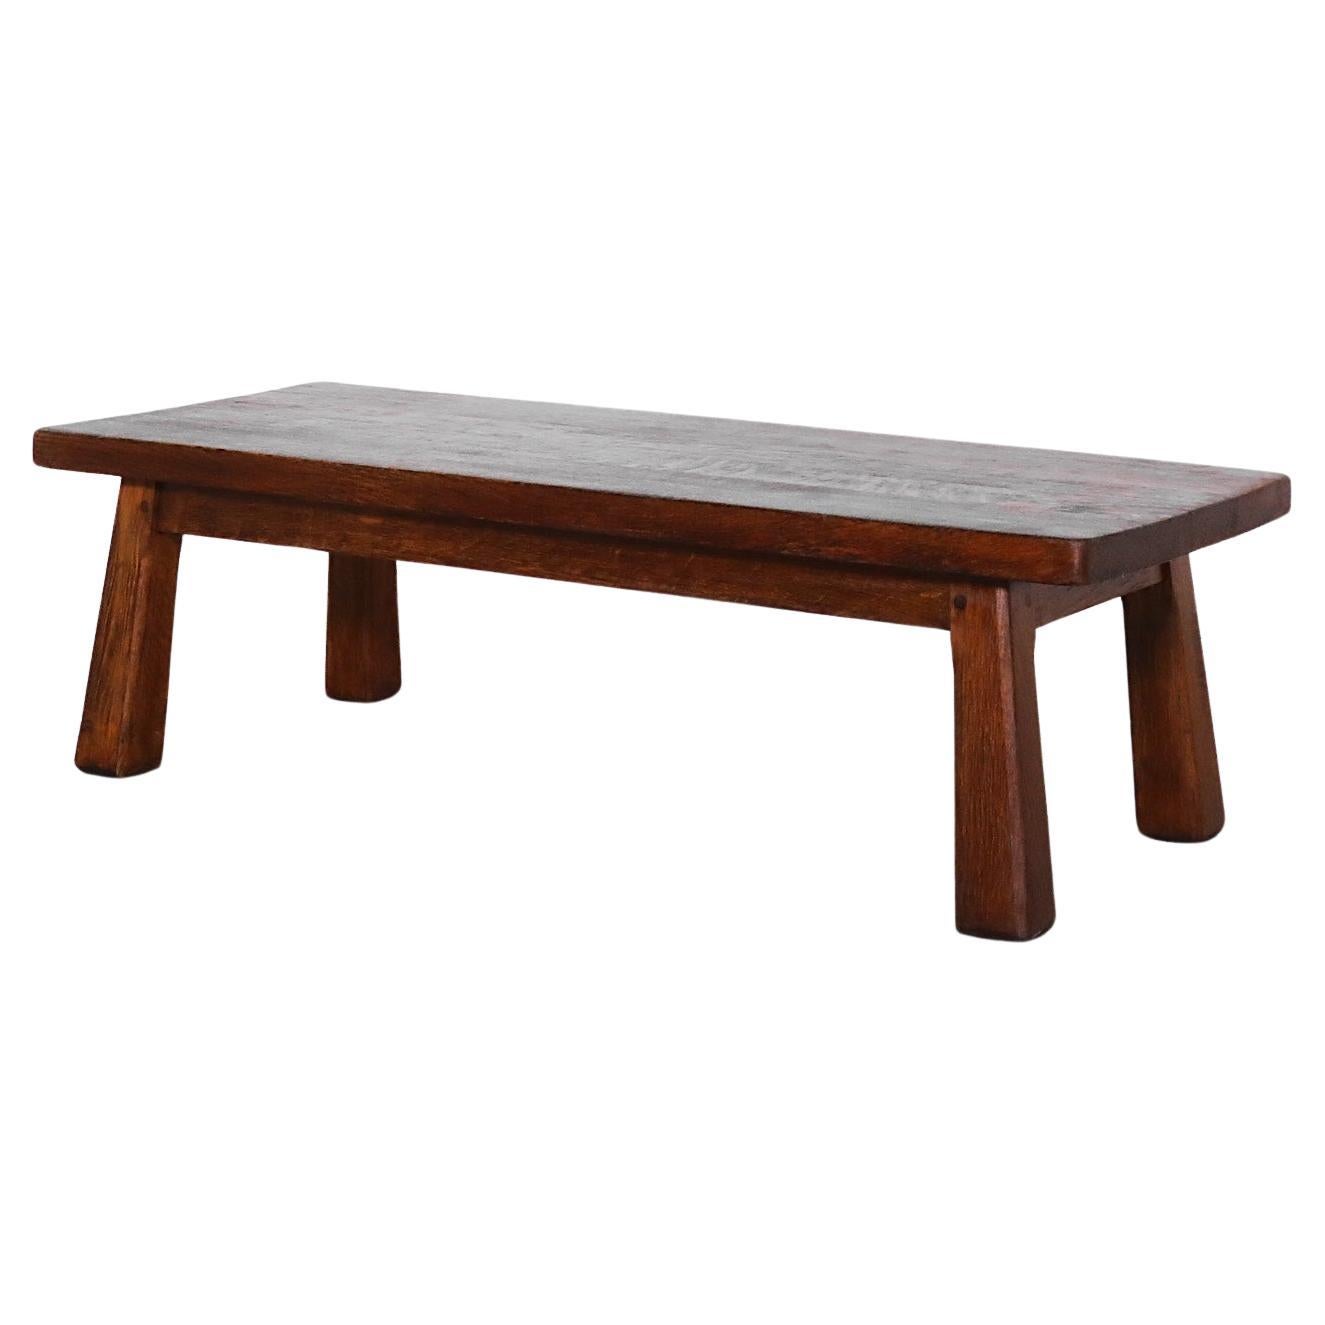 Pierre Chapo Inspired Heavy Oak Table or Bench